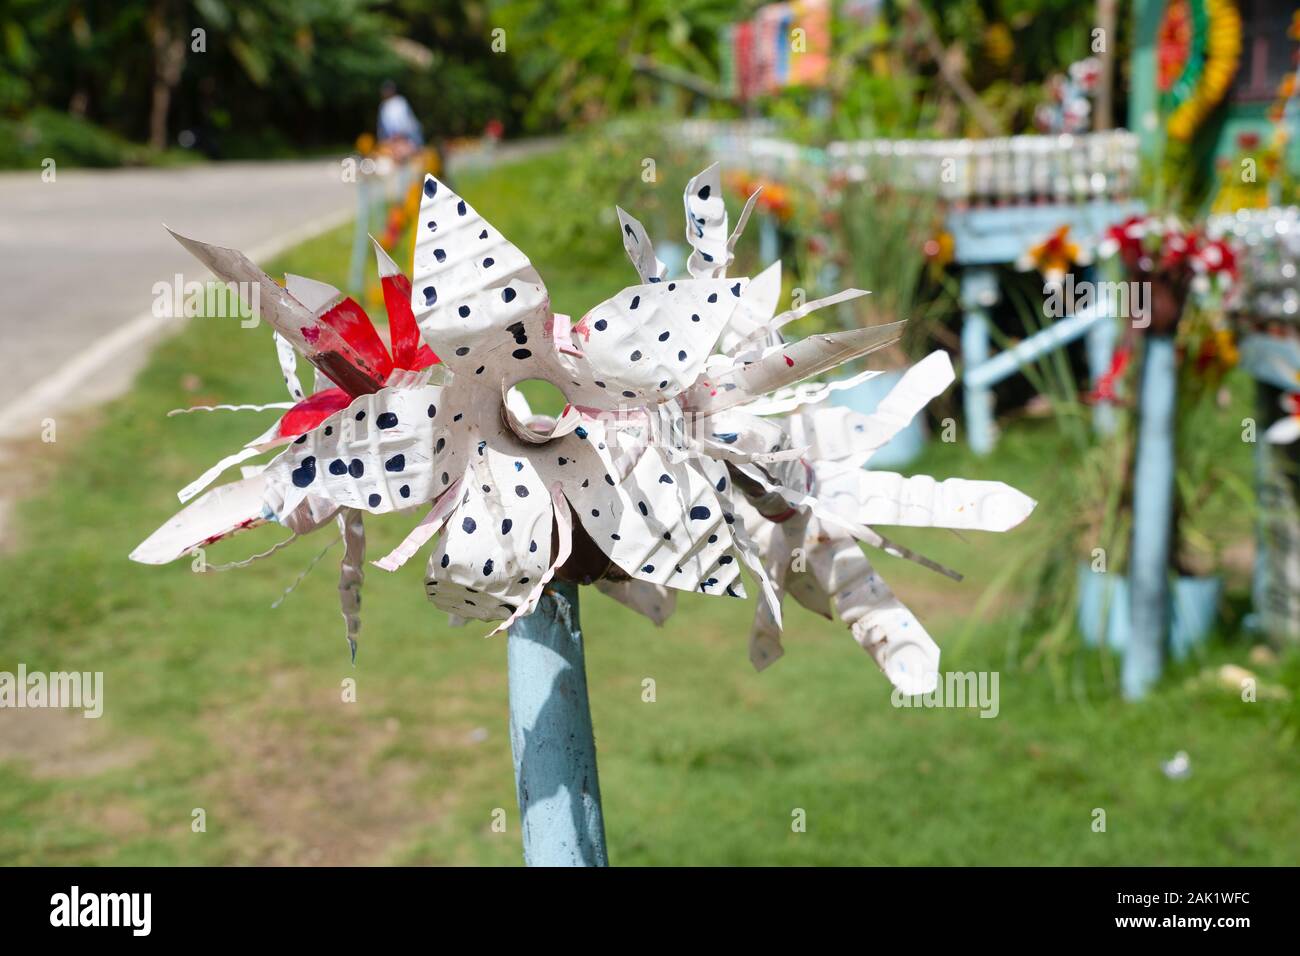 Eine improvisierte dekorative Blume aus recycelten Plastikflaschen hergestellt. Siargao Island, Philippinen Stockfoto